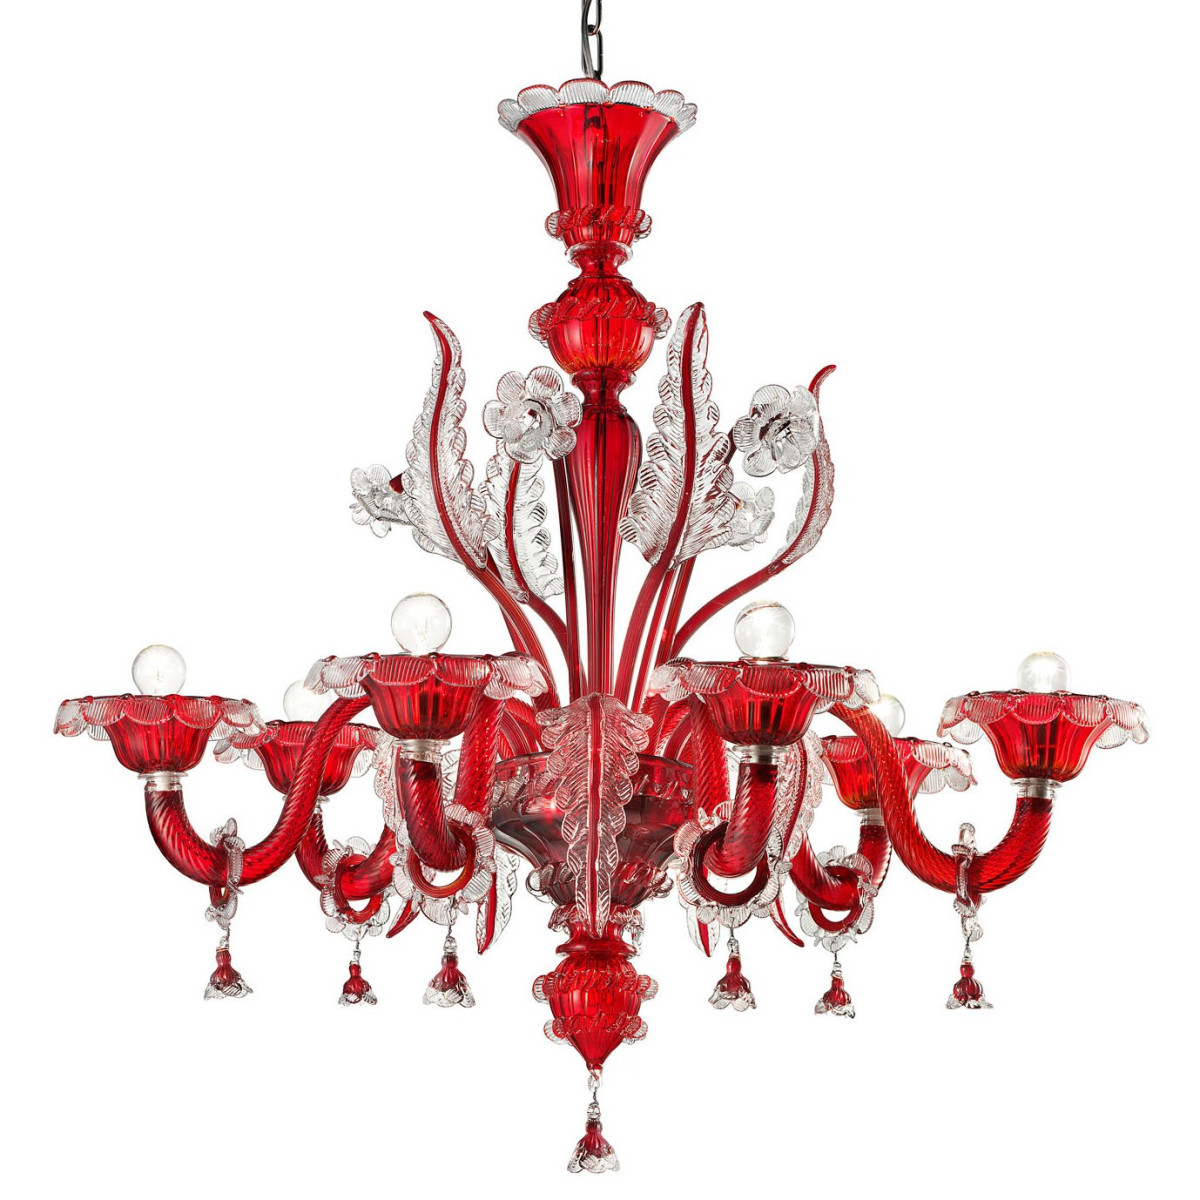 "Santa Lucia" lampara de cristal de Murano - 6 luces - rojo y transparente